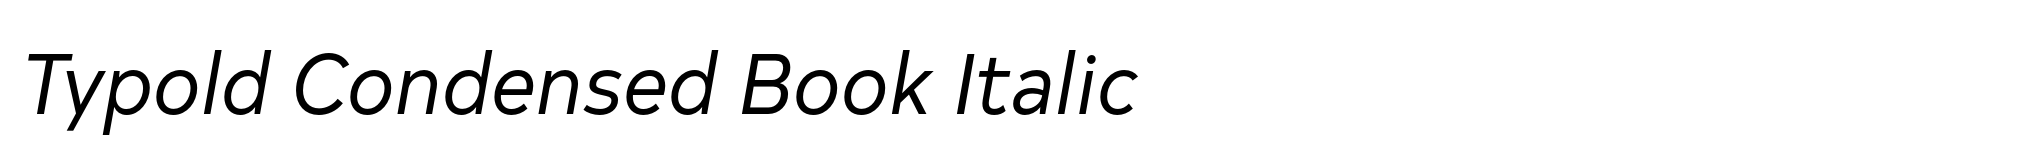 Typold Condensed Book Italic image